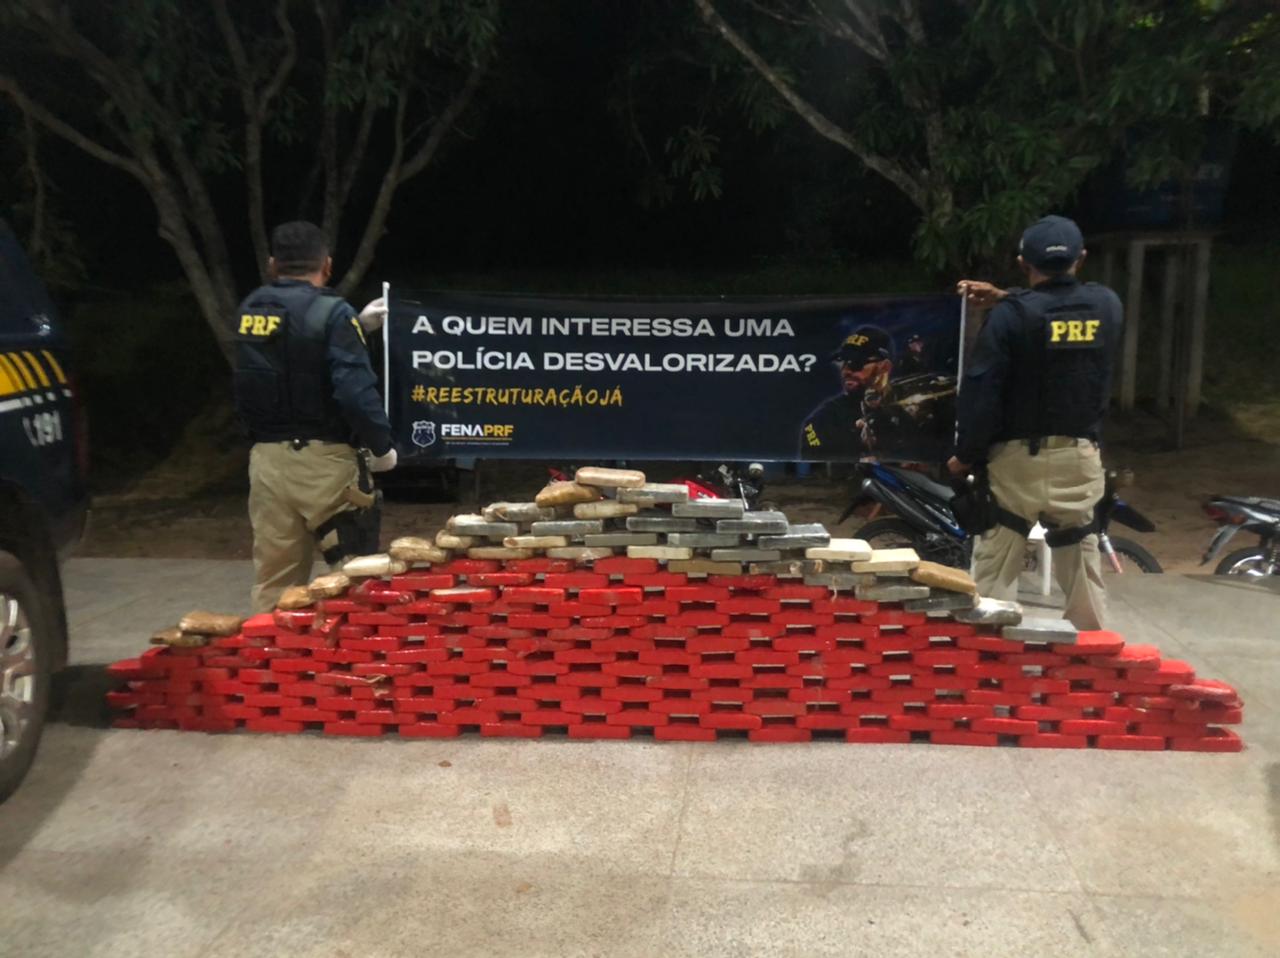 25/05: PRF apreende 180kg de cocaína em mais uma abordagem no Maranhão